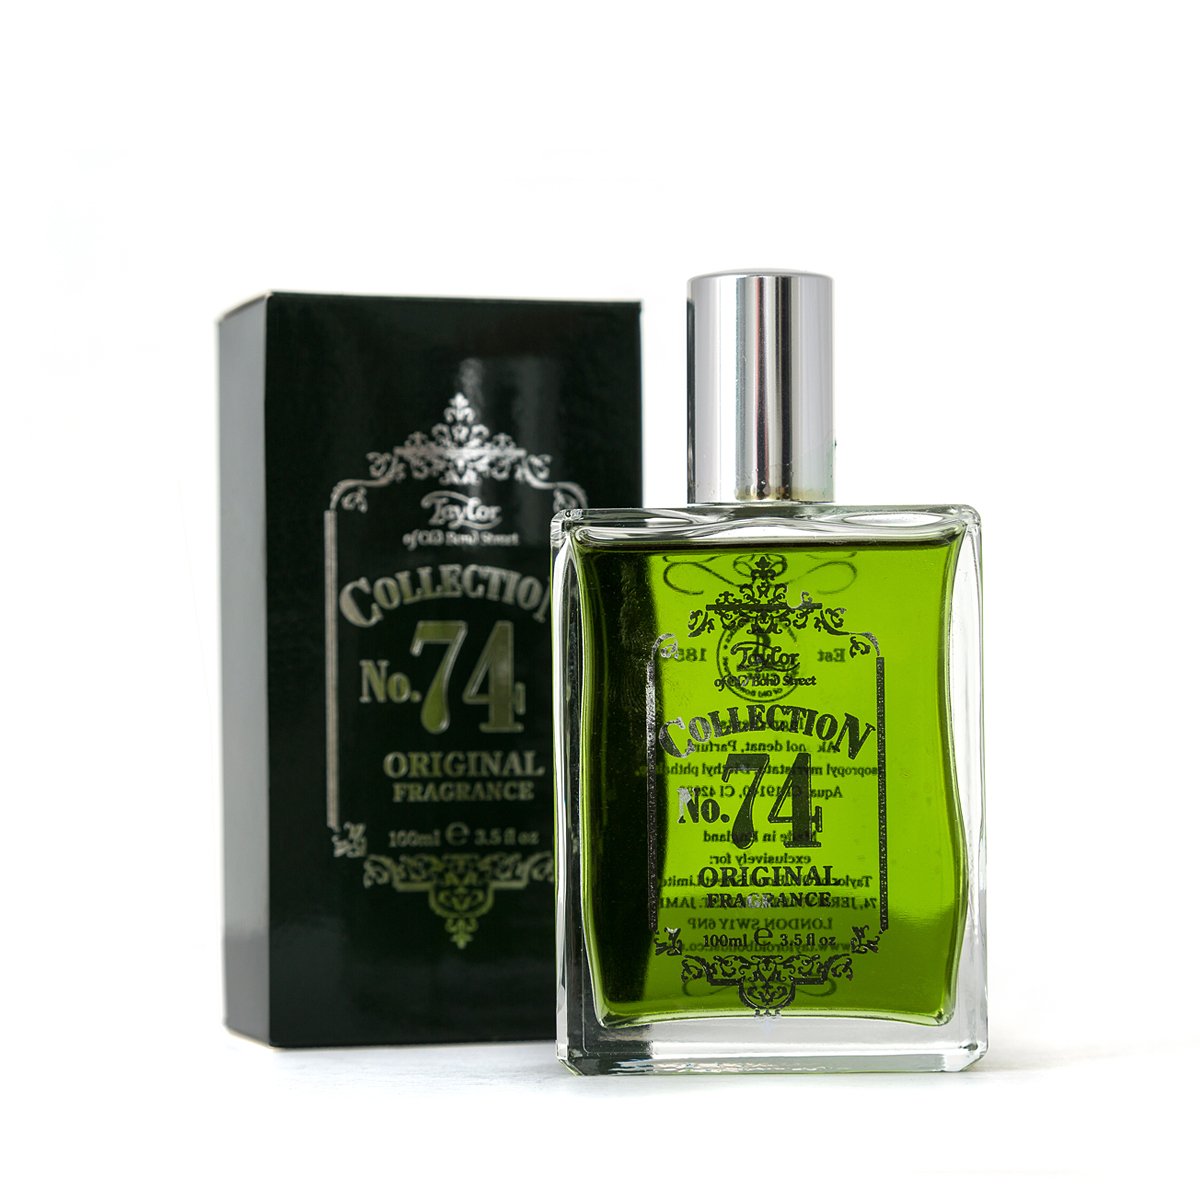 No.74 Original apa de fragrance